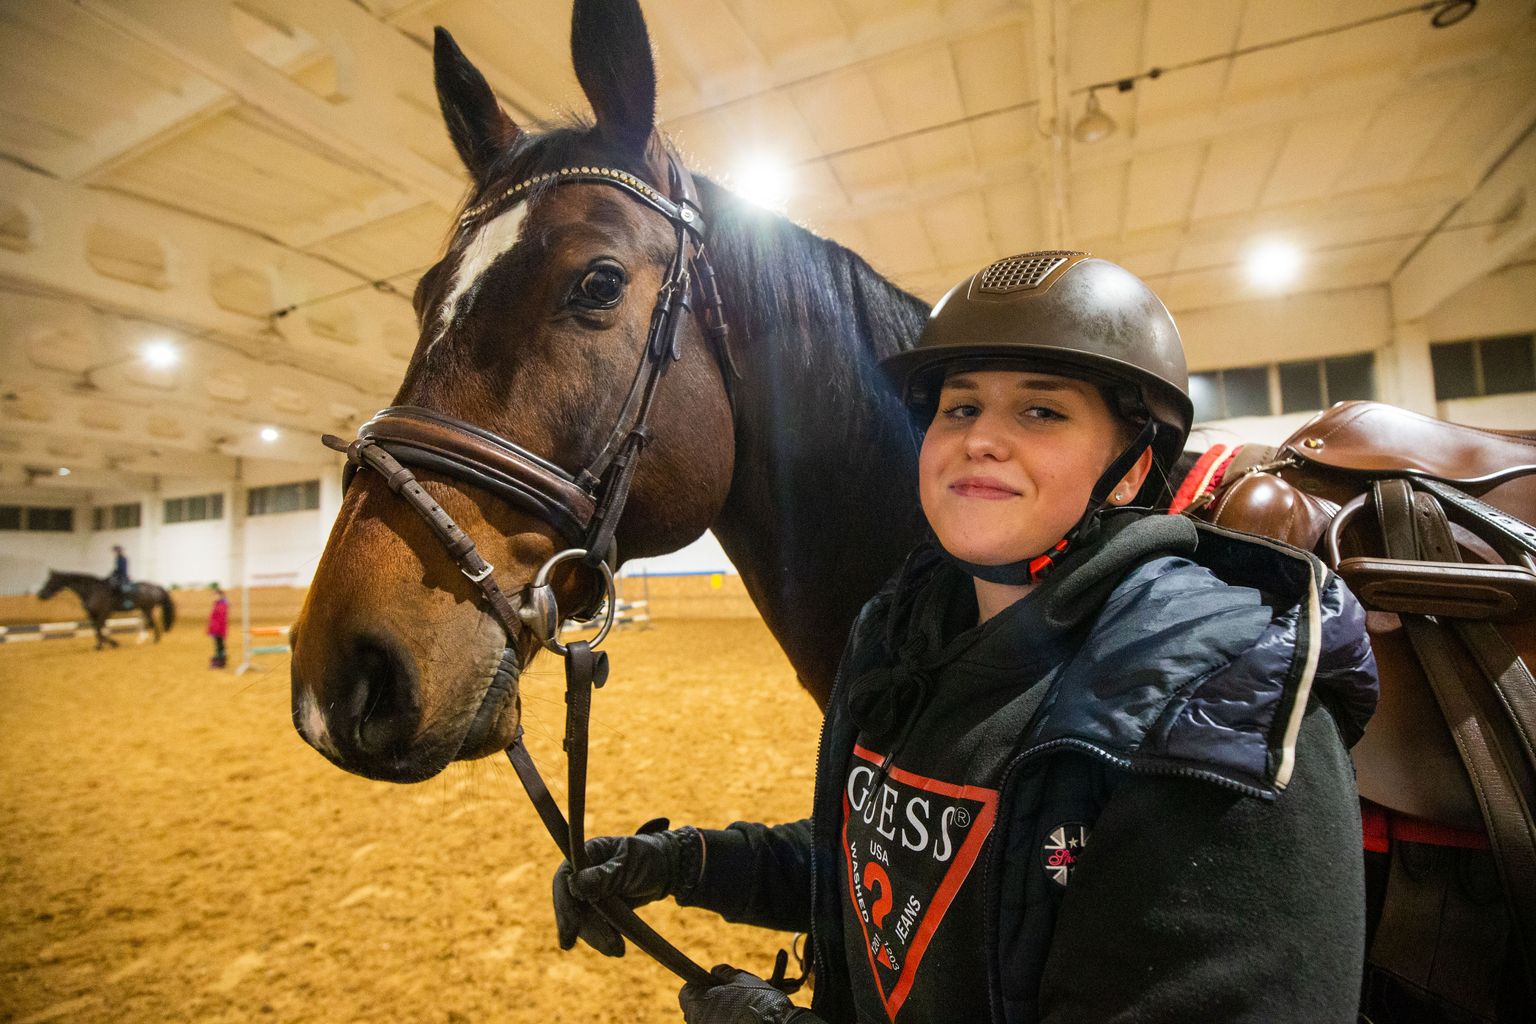 16-aastane Eliisa Kalpus on Tartu neiu, kes armastab üle kõige ratsutamist. Esimest korda istus ta hobuse selga seitsmeaastasena. Kaks aastat varem oli tal diagnoositud juveniilne idiopaatiline artriit ehk krooniline haigus, mille tunnus on pikaajaline liigesepõletik.